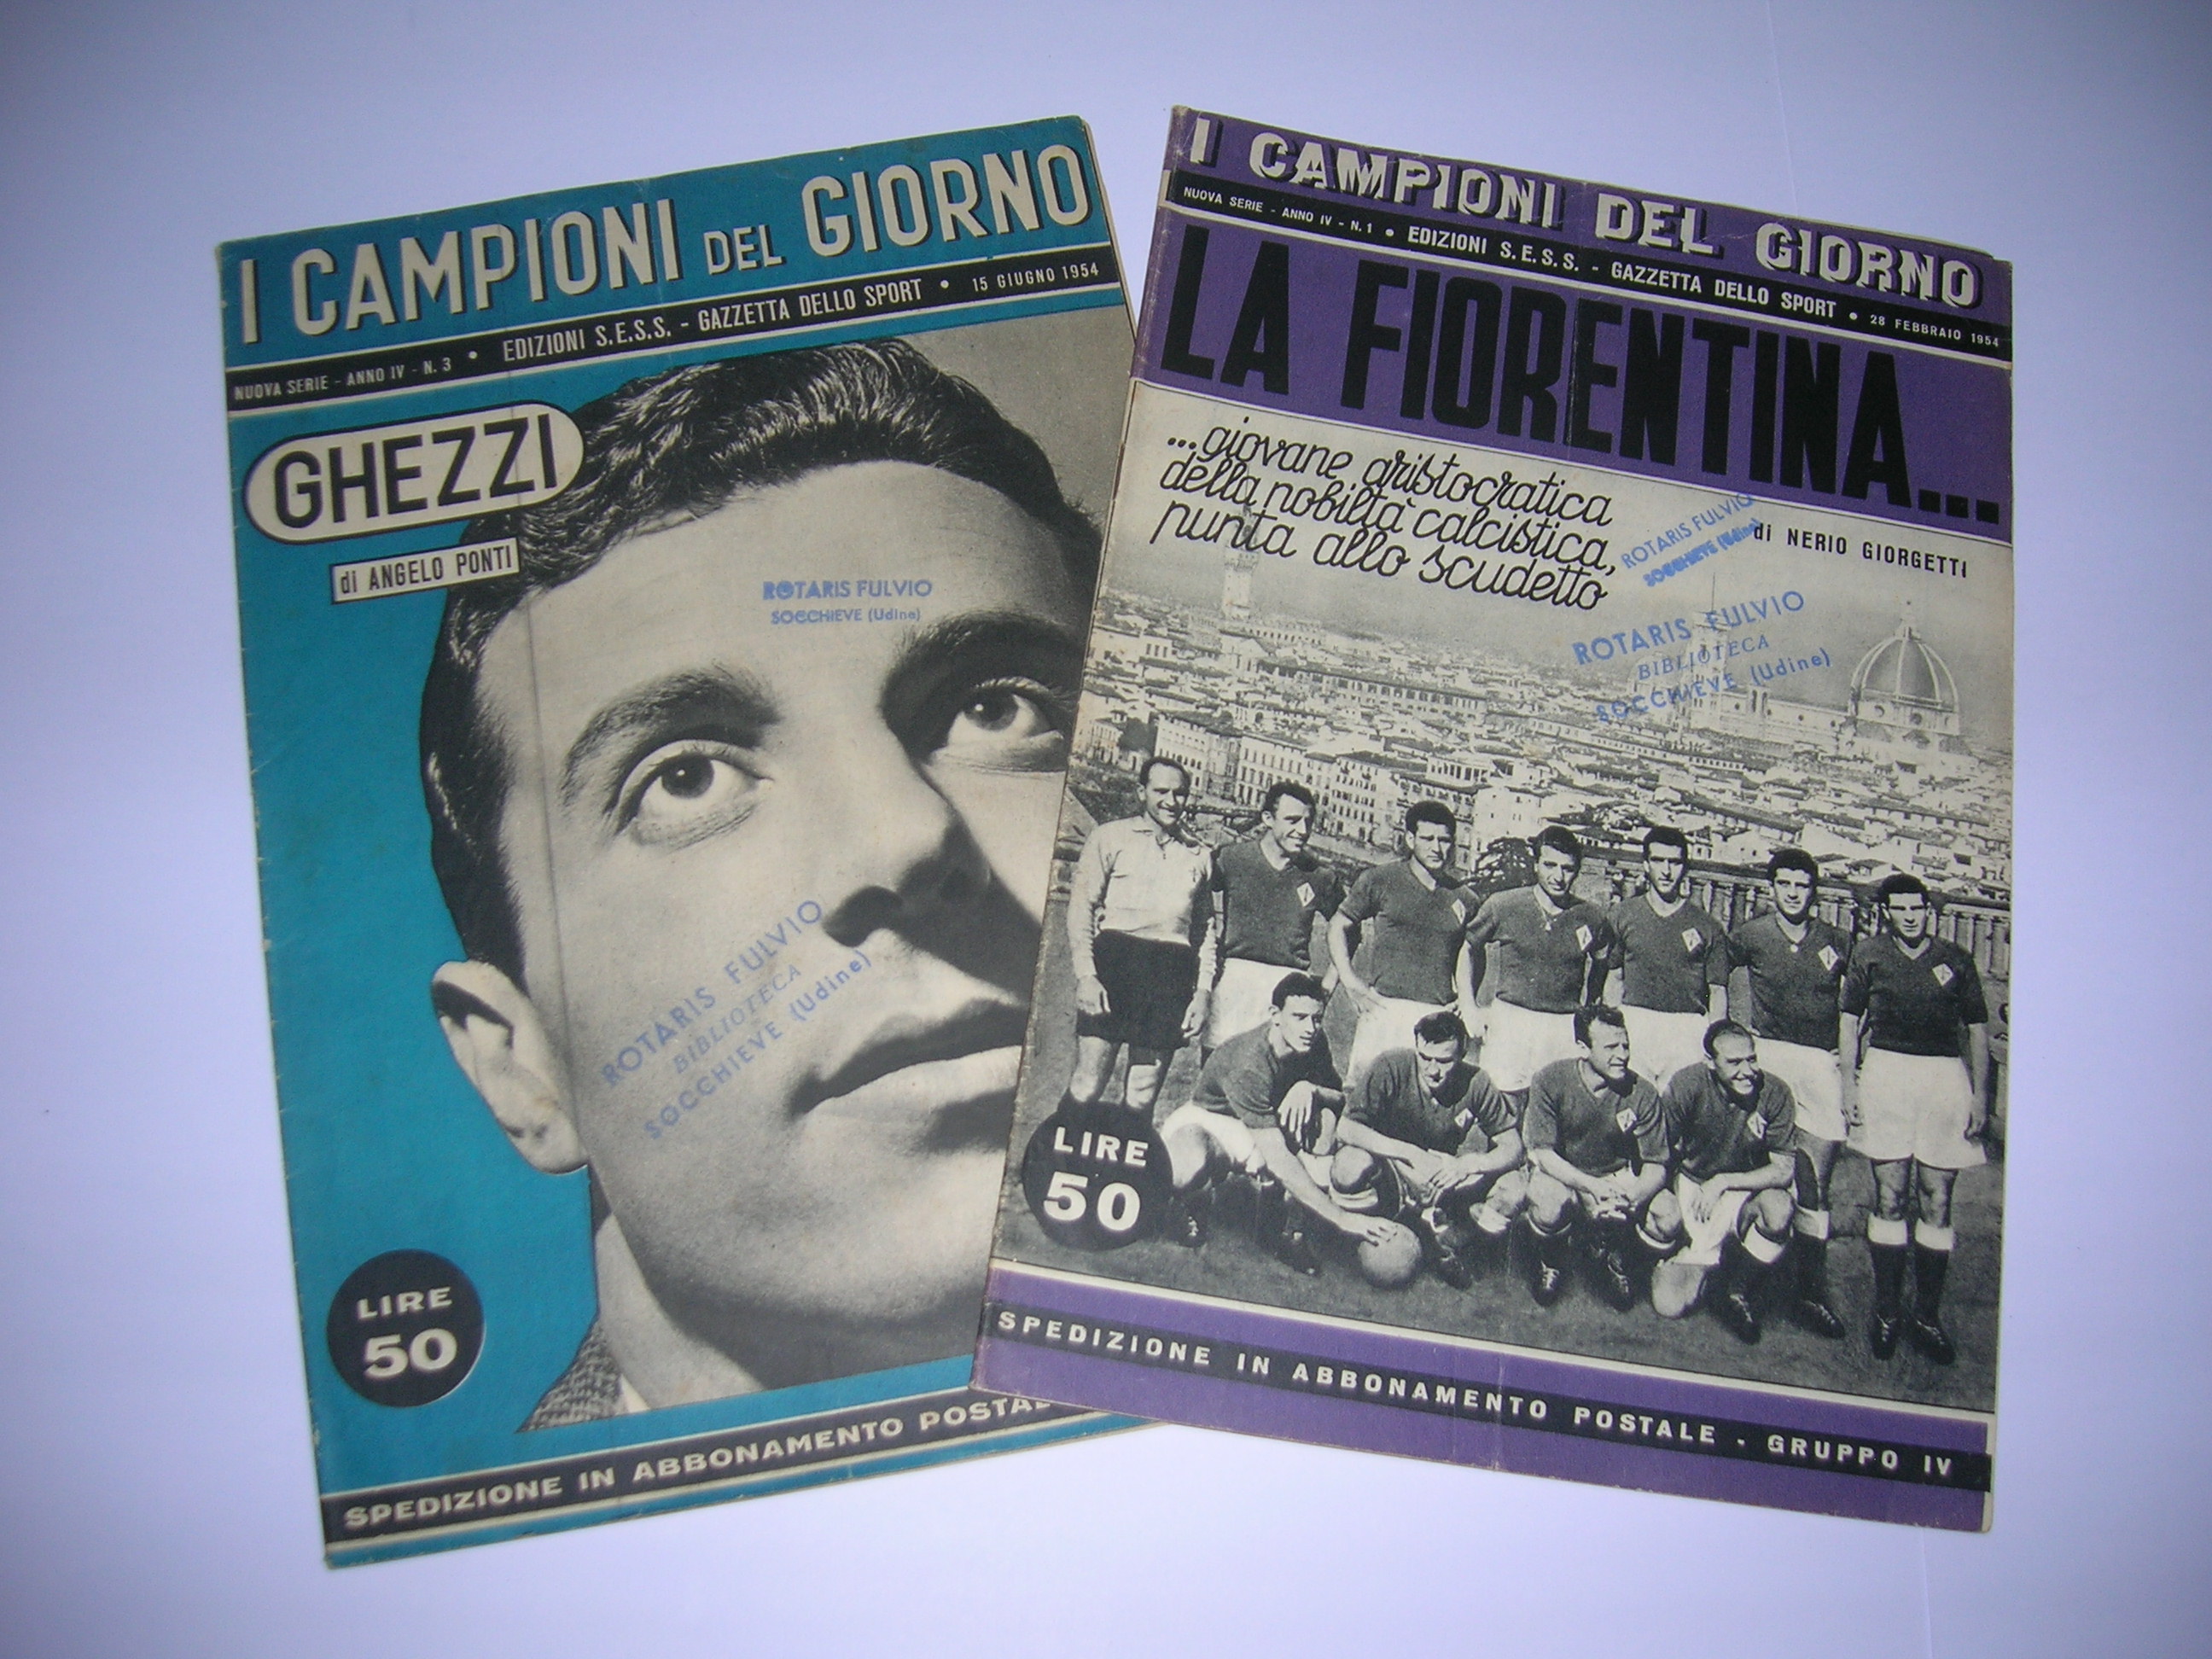 I Campioni del Giorno Fiorentina e Ghezzi  1954